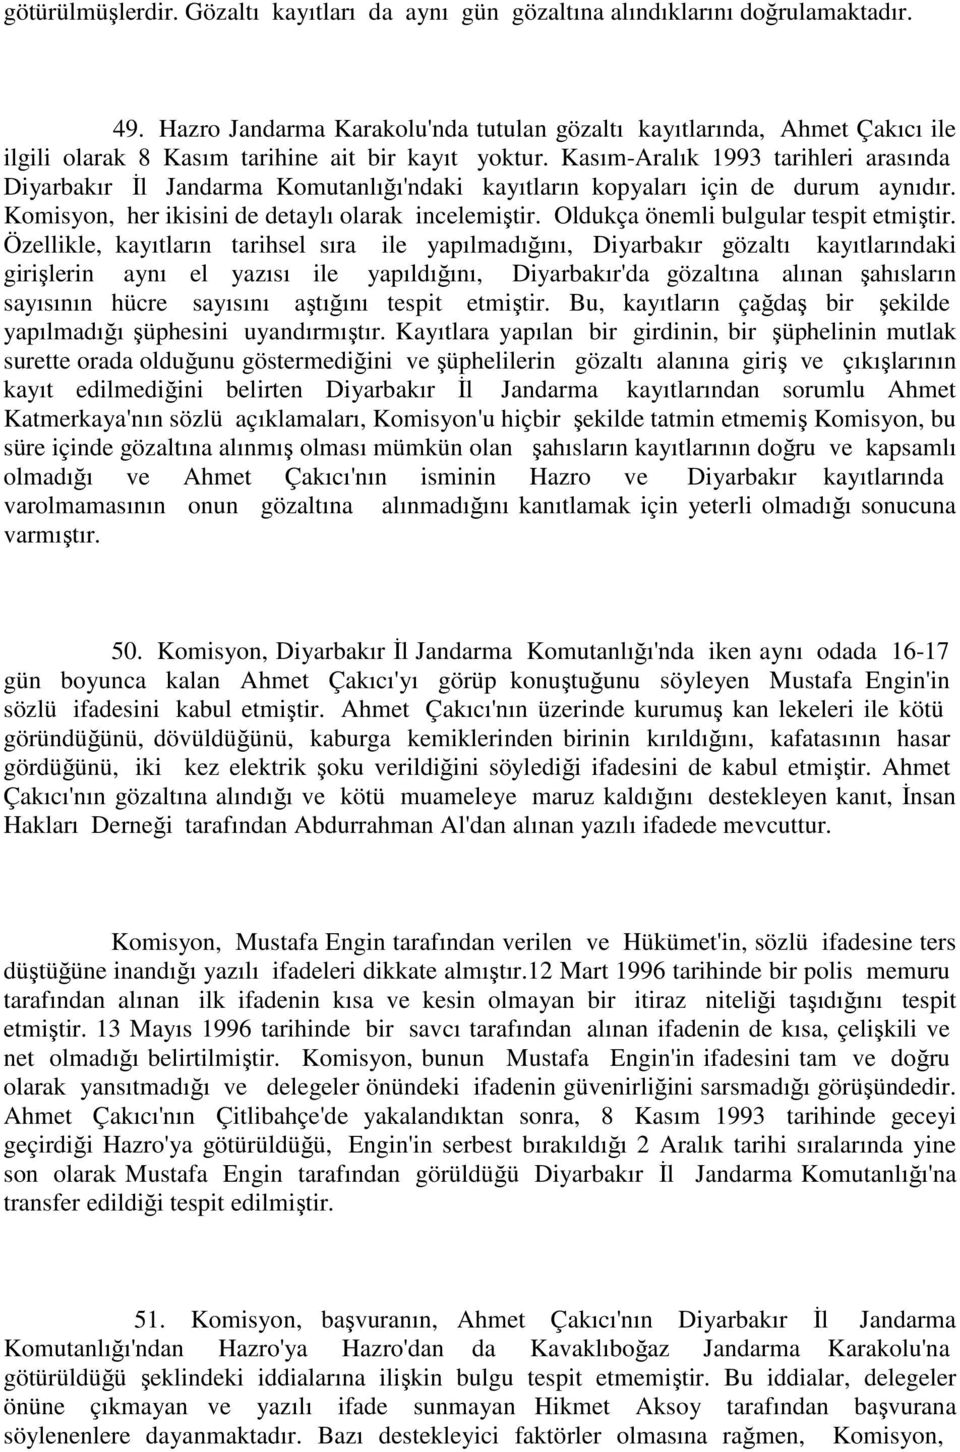 Kasım-Aralık 1993 tarihleri arasında Diyarbakır Đl Jandarma Komutanlığı'ndaki kayıtların kopyaları için de durum aynıdır. Komisyon, her ikisini de detaylı olarak incelemiştir.